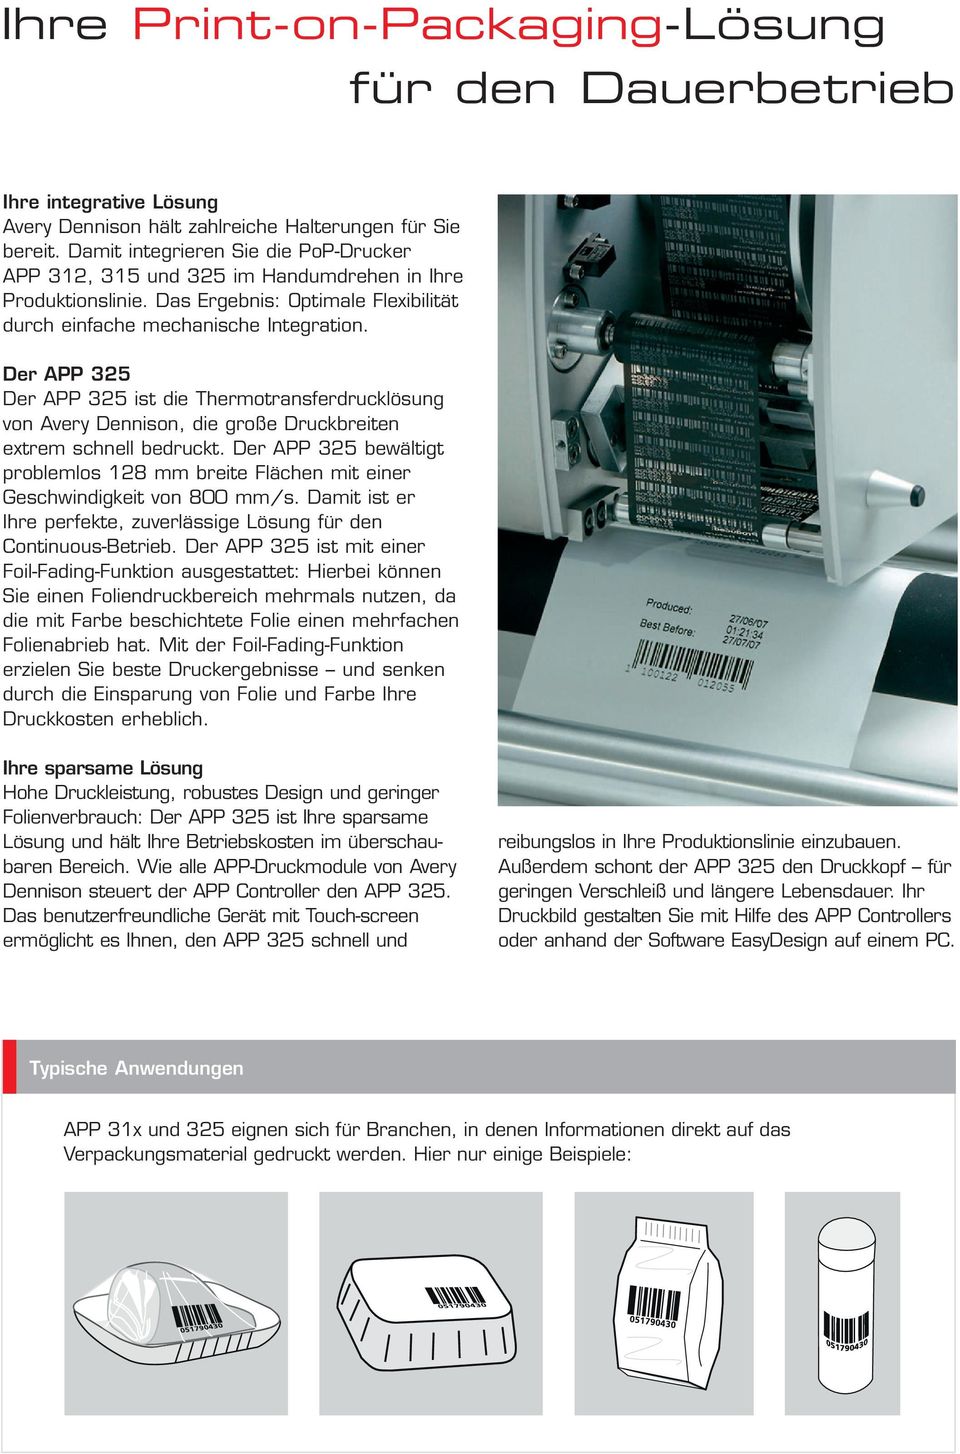 Der APP 325 Der APP 325 ist die Thermotransferdrucklösung von Avery Dennison, die große Druckbreiten extrem schnell bedruckt.